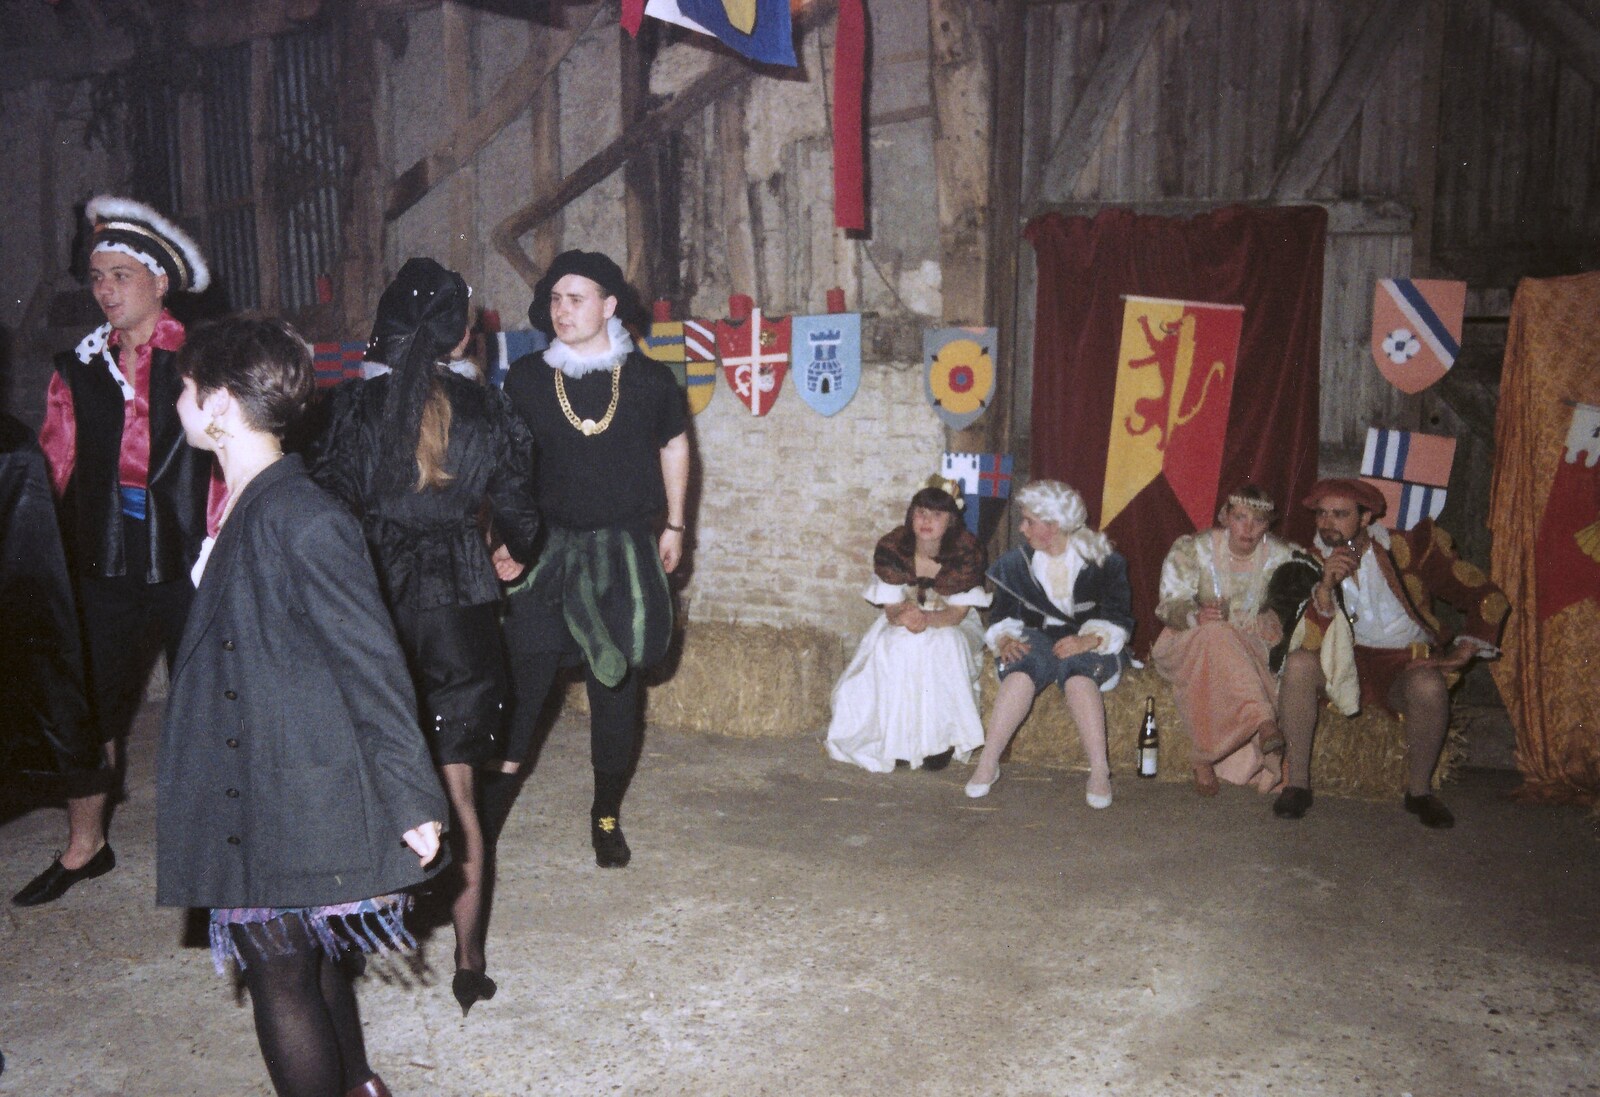 Mediaeval disco from A Mediaeval Birthday Party, Starston, Norfolk - 27th July 1990